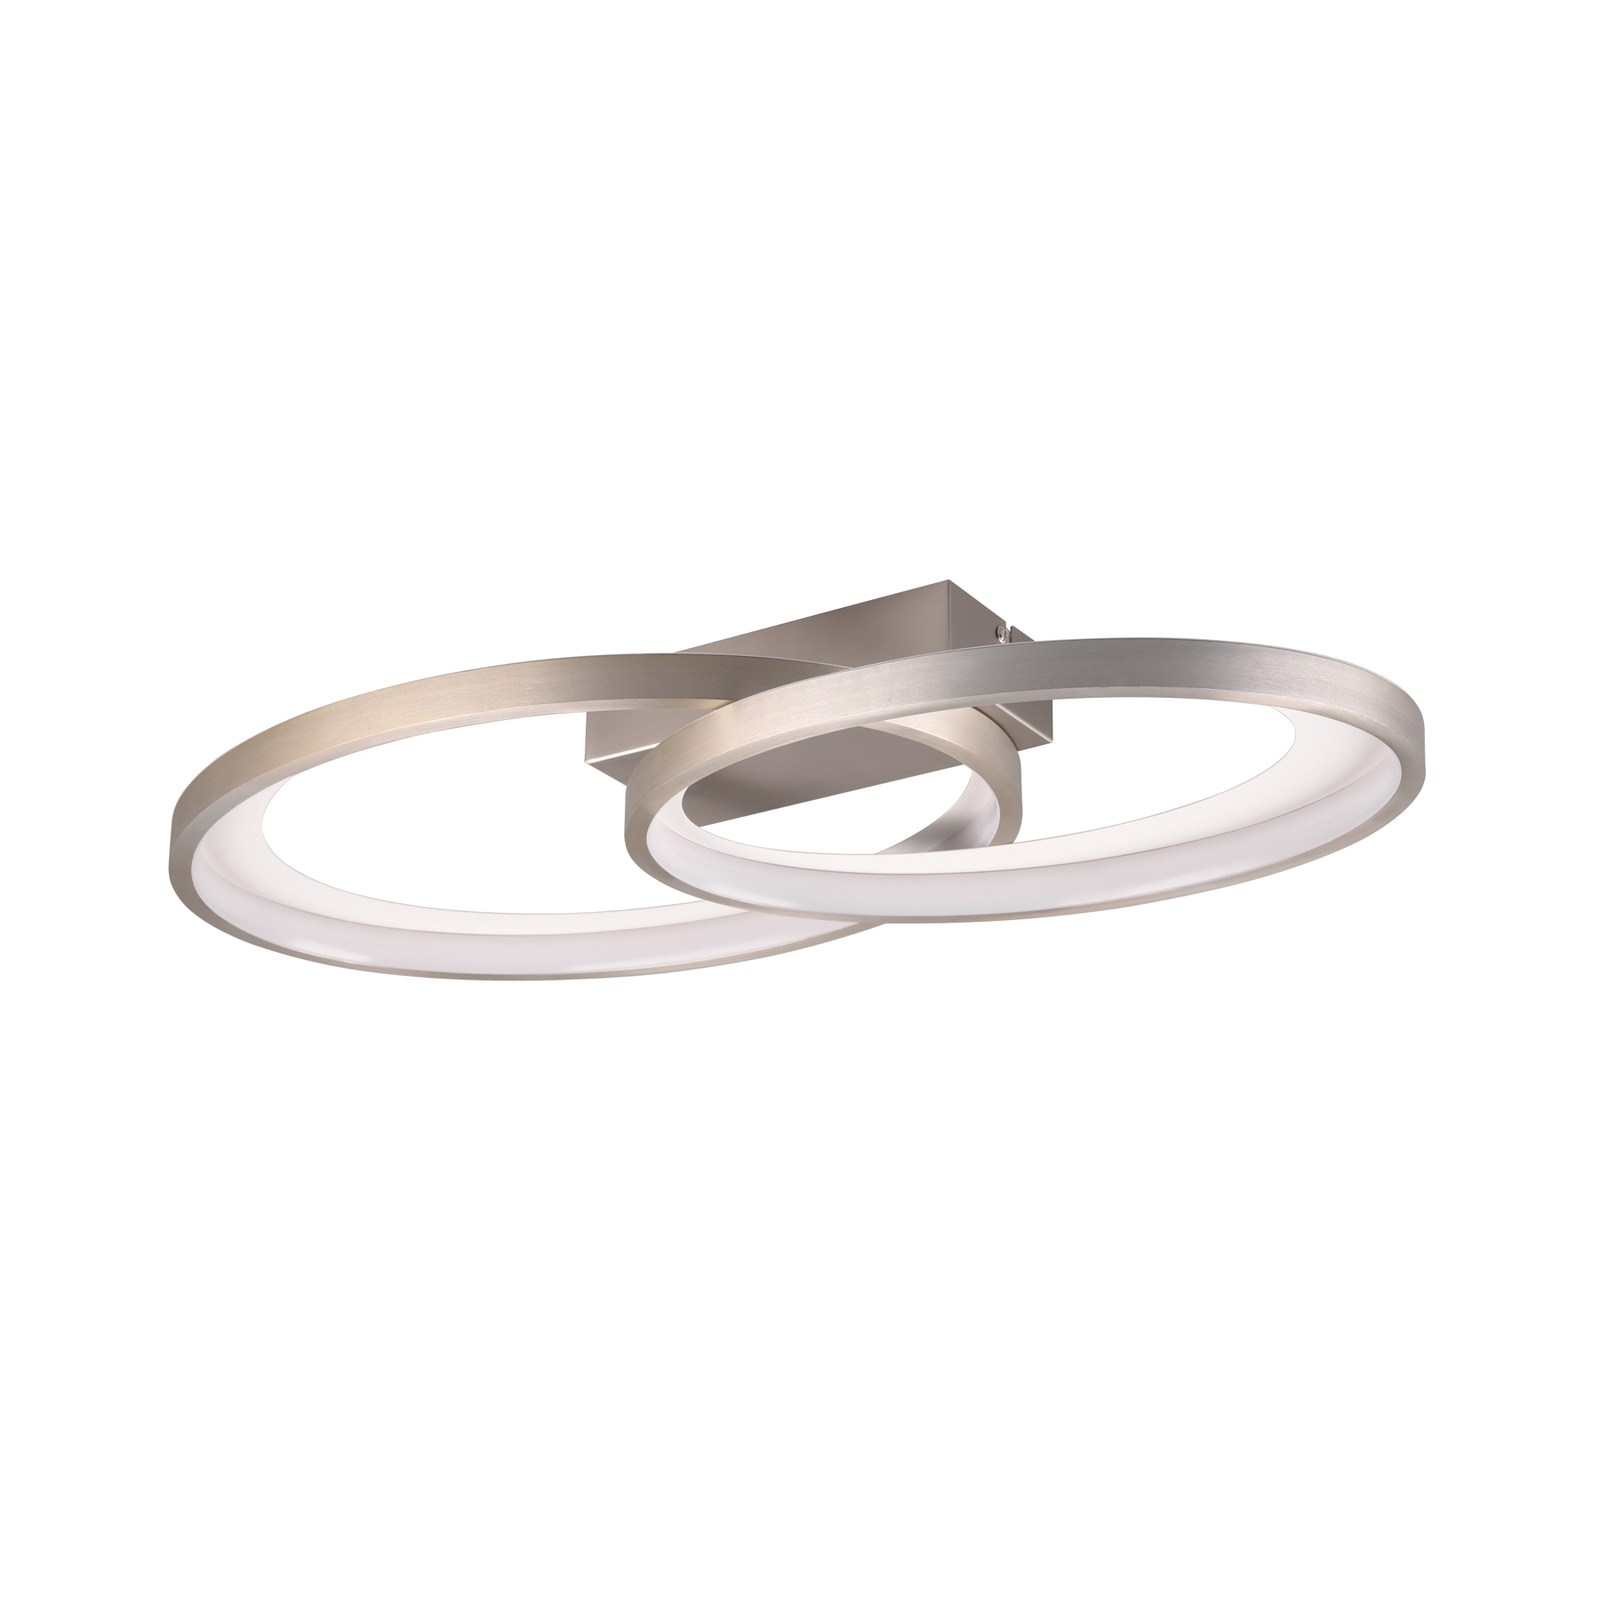 LED mennyezeti világítás Malaga 2 gyűrűvel, nikkel